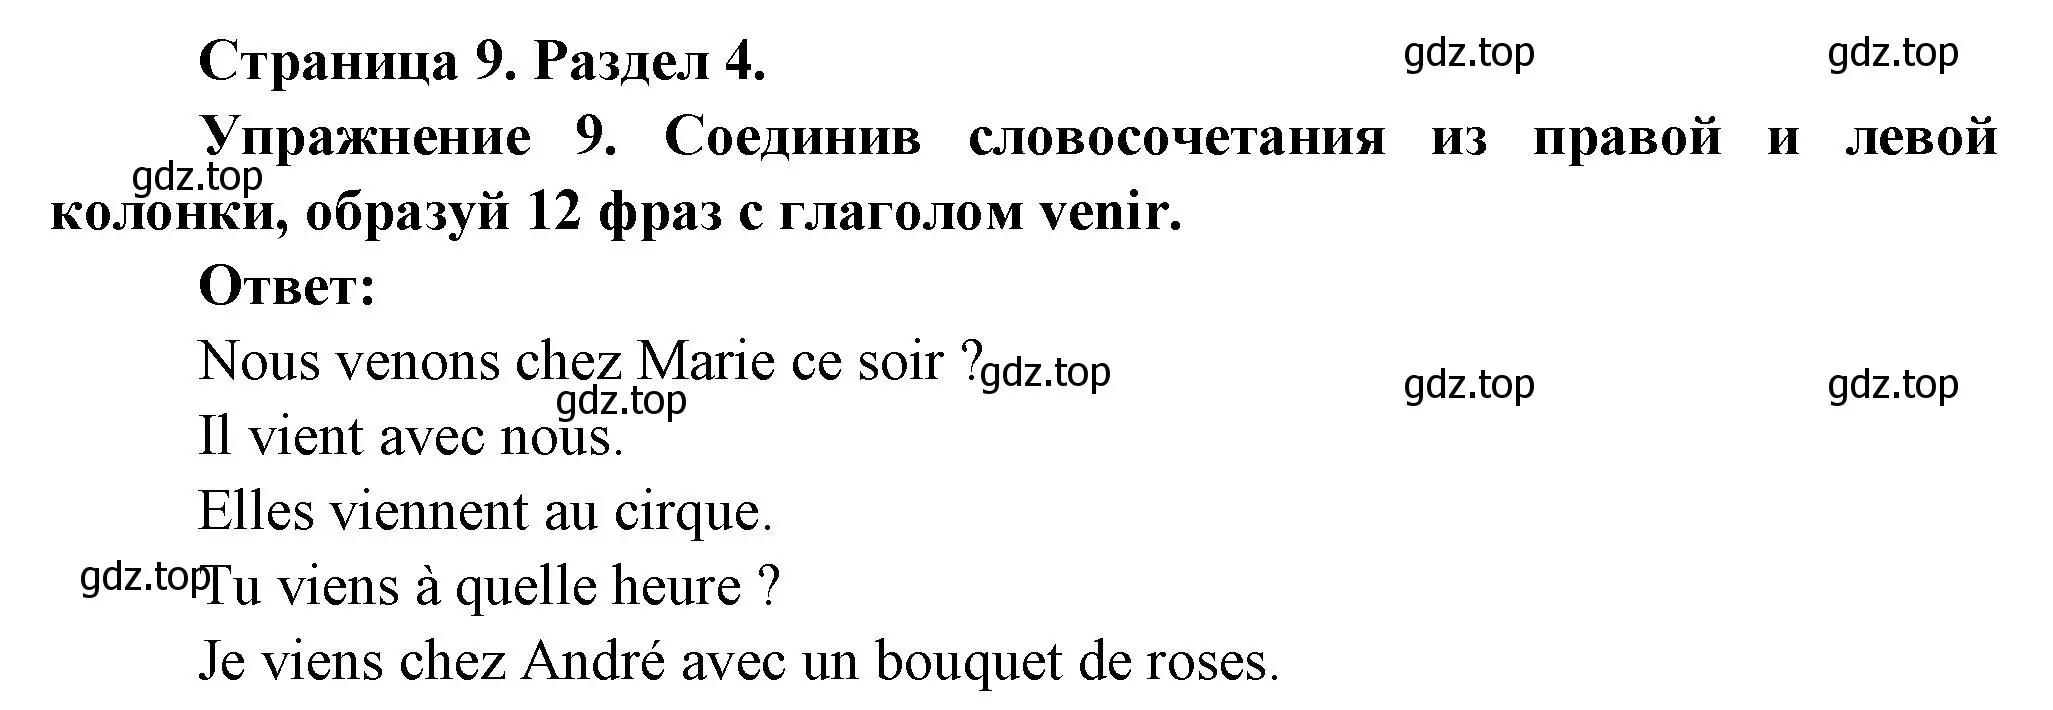 Решение номер 9 (страница 9) гдз по французскому языку 5 класс Береговская, Белосельская, учебник 2 часть